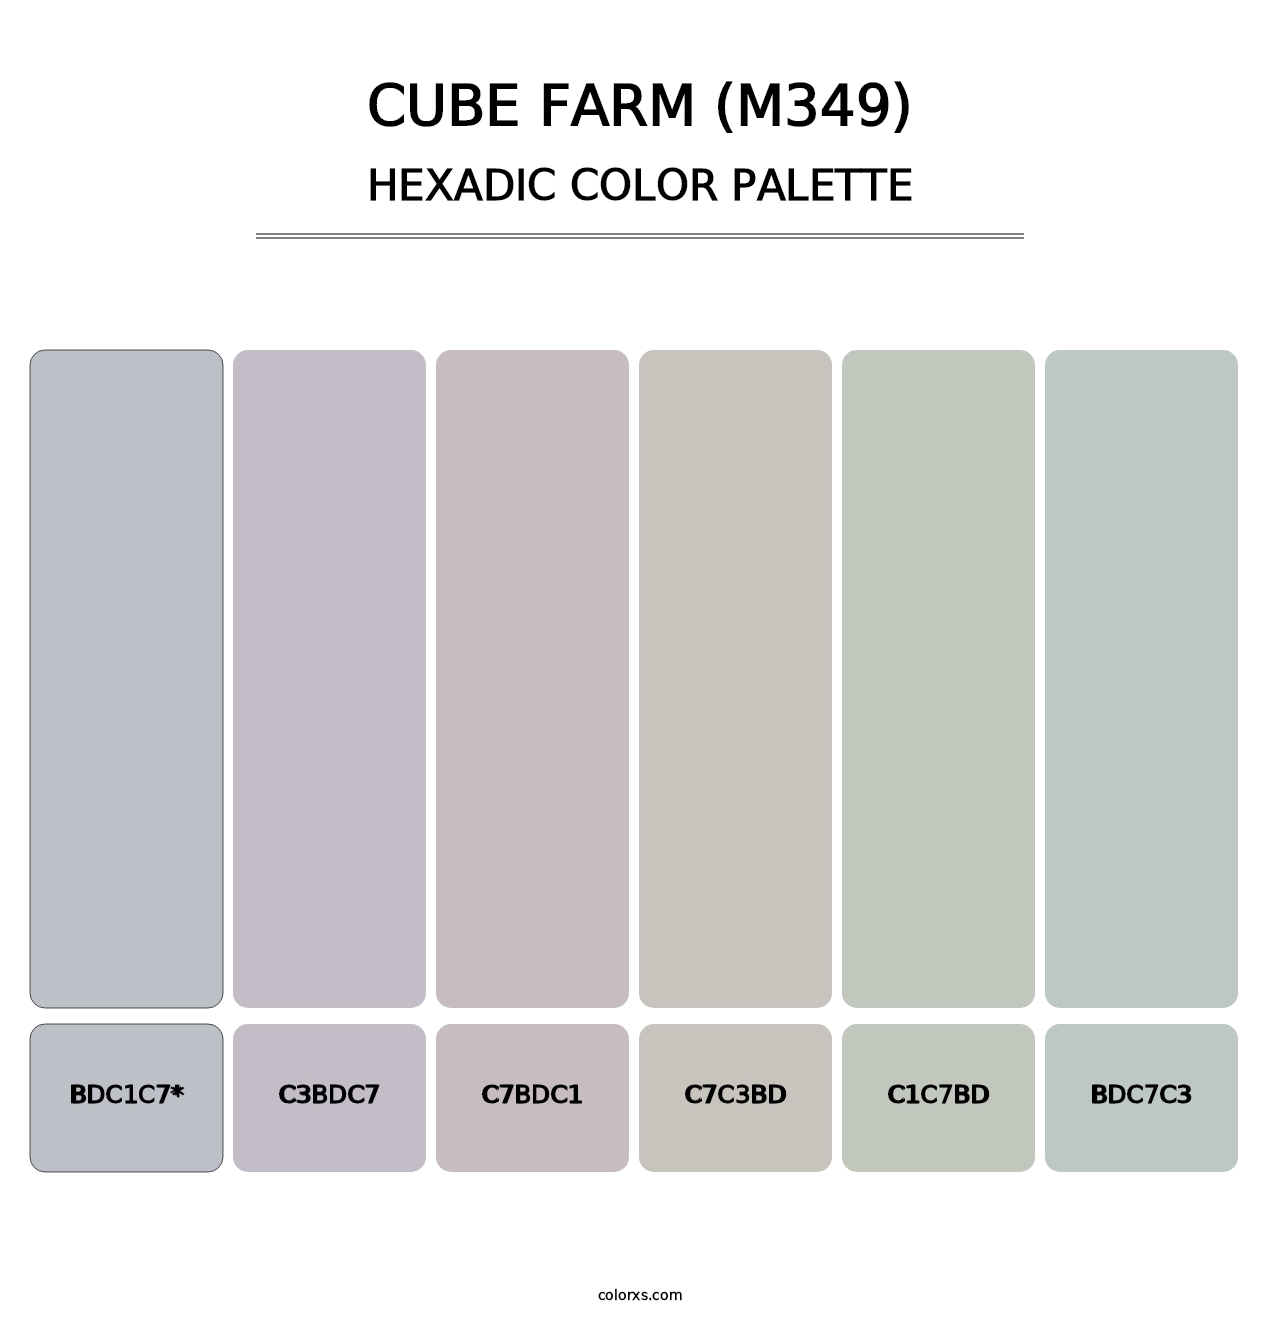 Cube Farm (M349) - Hexadic Color Palette